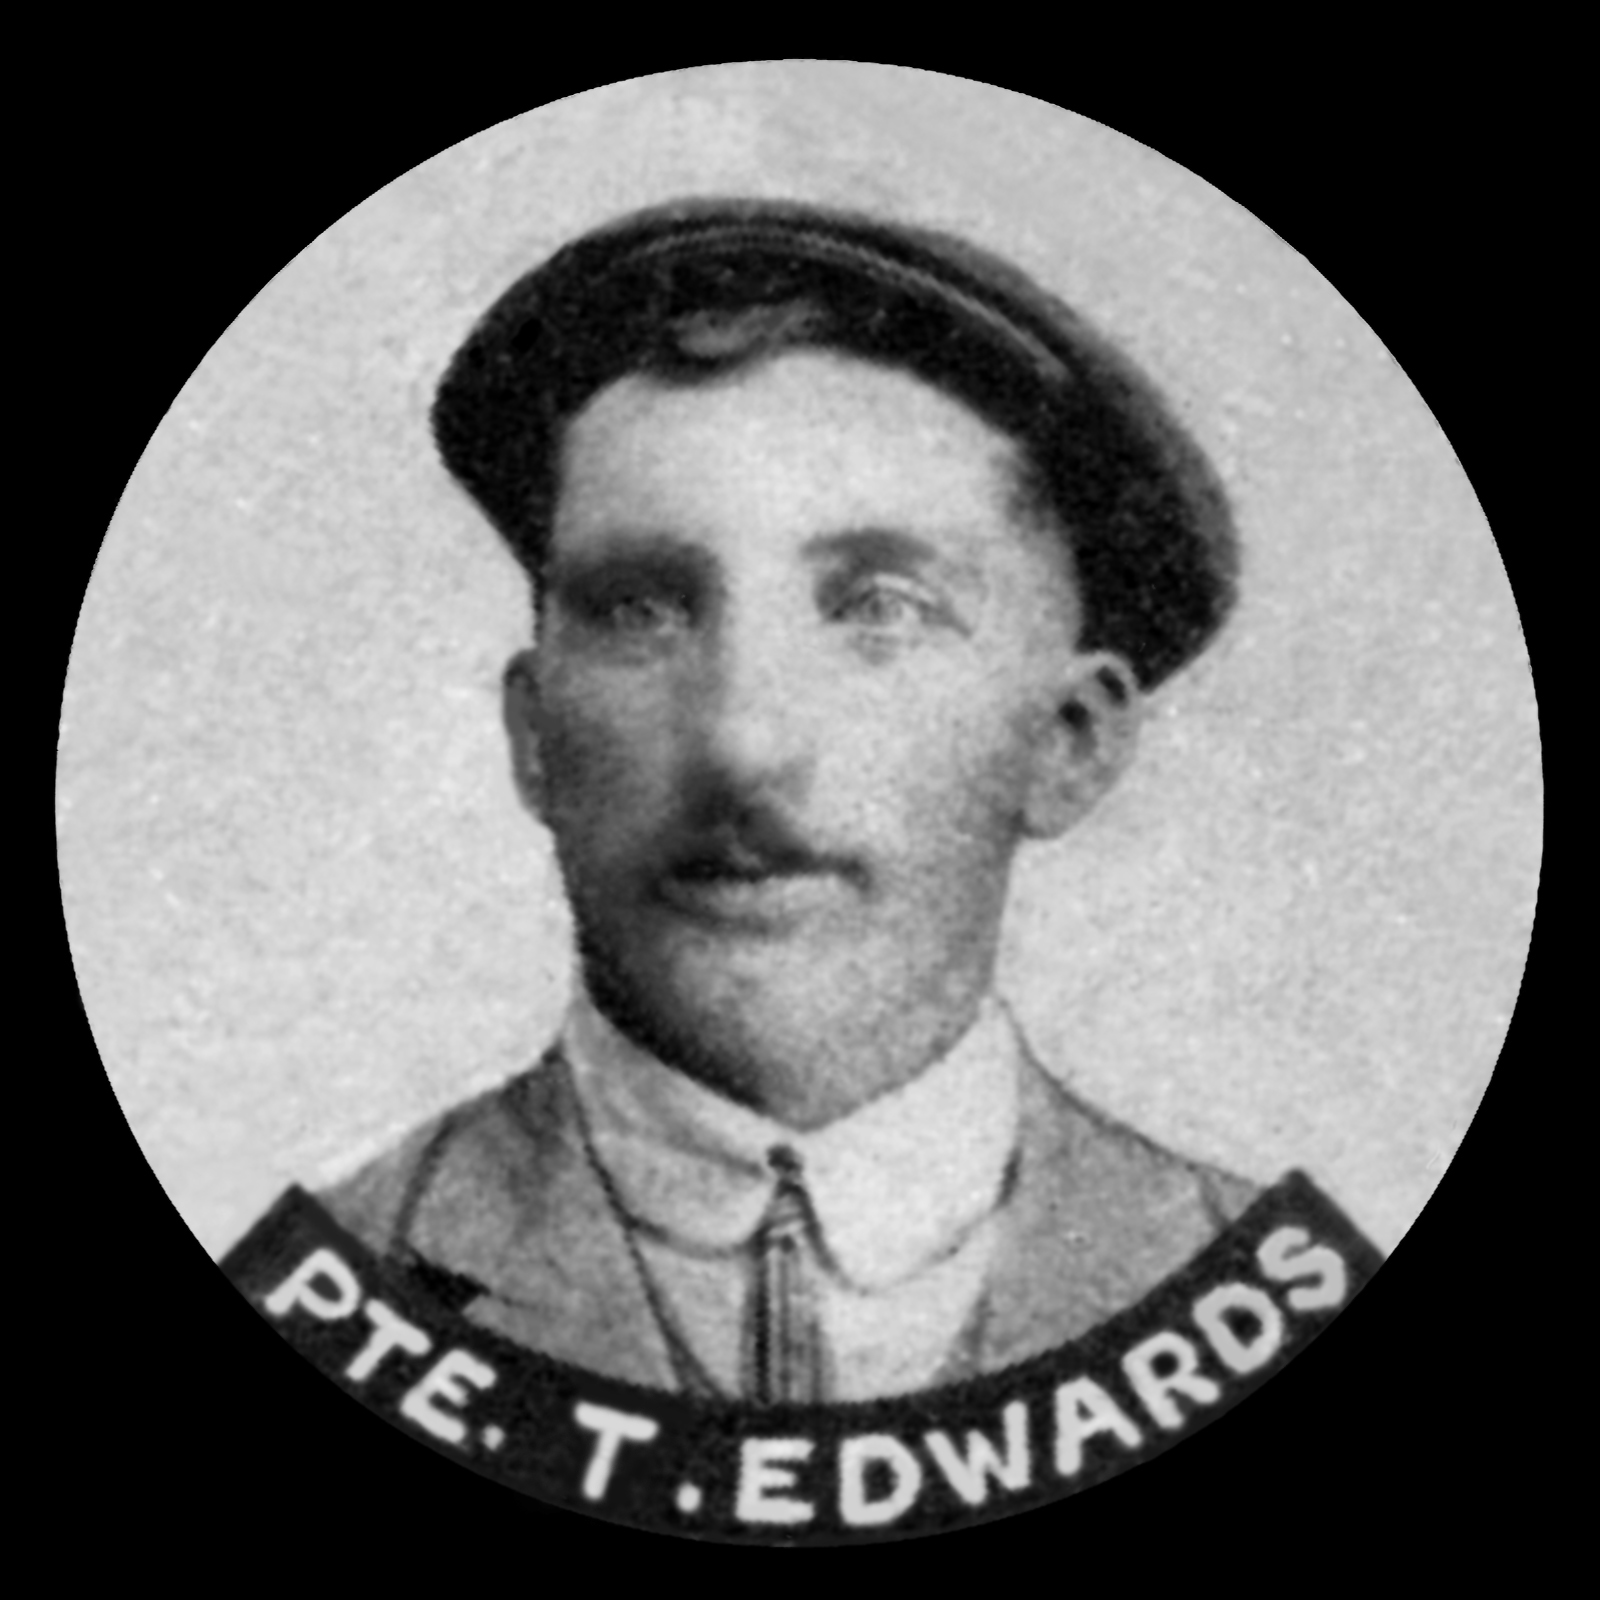 EDWARDS Joseph Thomas